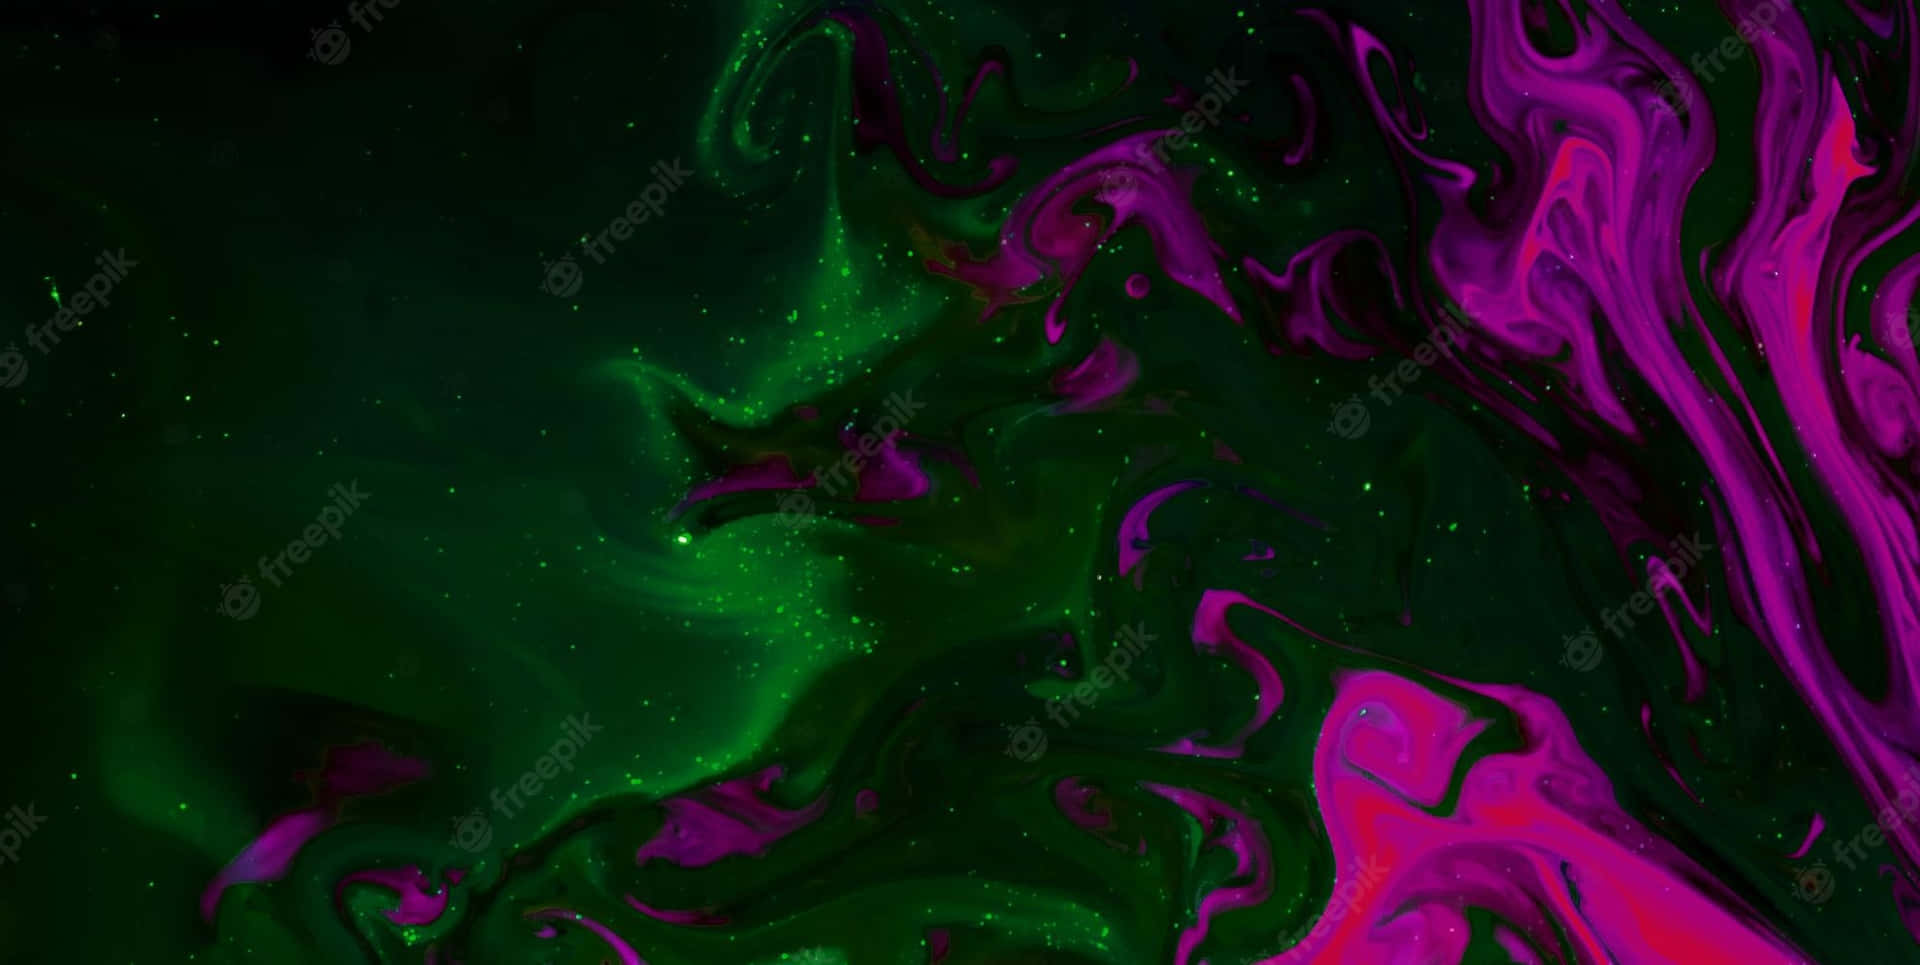 Tvålivliga Färger - Lila Och Neongrön - Skapar En Iögonfallande Kombination. Wallpaper